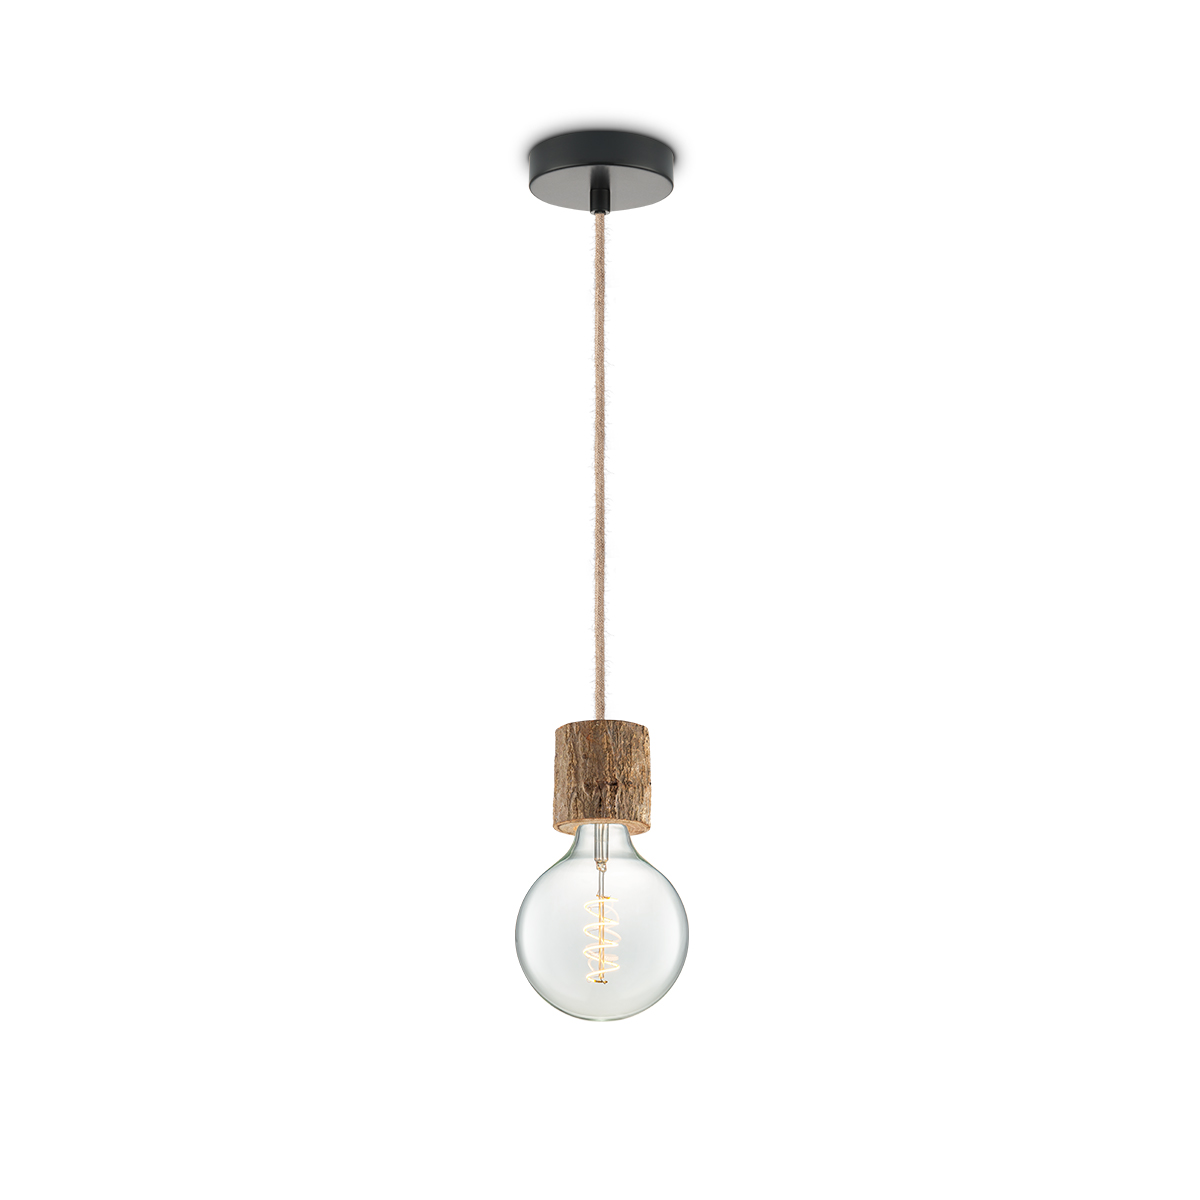 Tangla lighting - TLP7060-08NT - LED Pendant lamp 1 Light - metal + FSC wood -  natural - small texture - E27